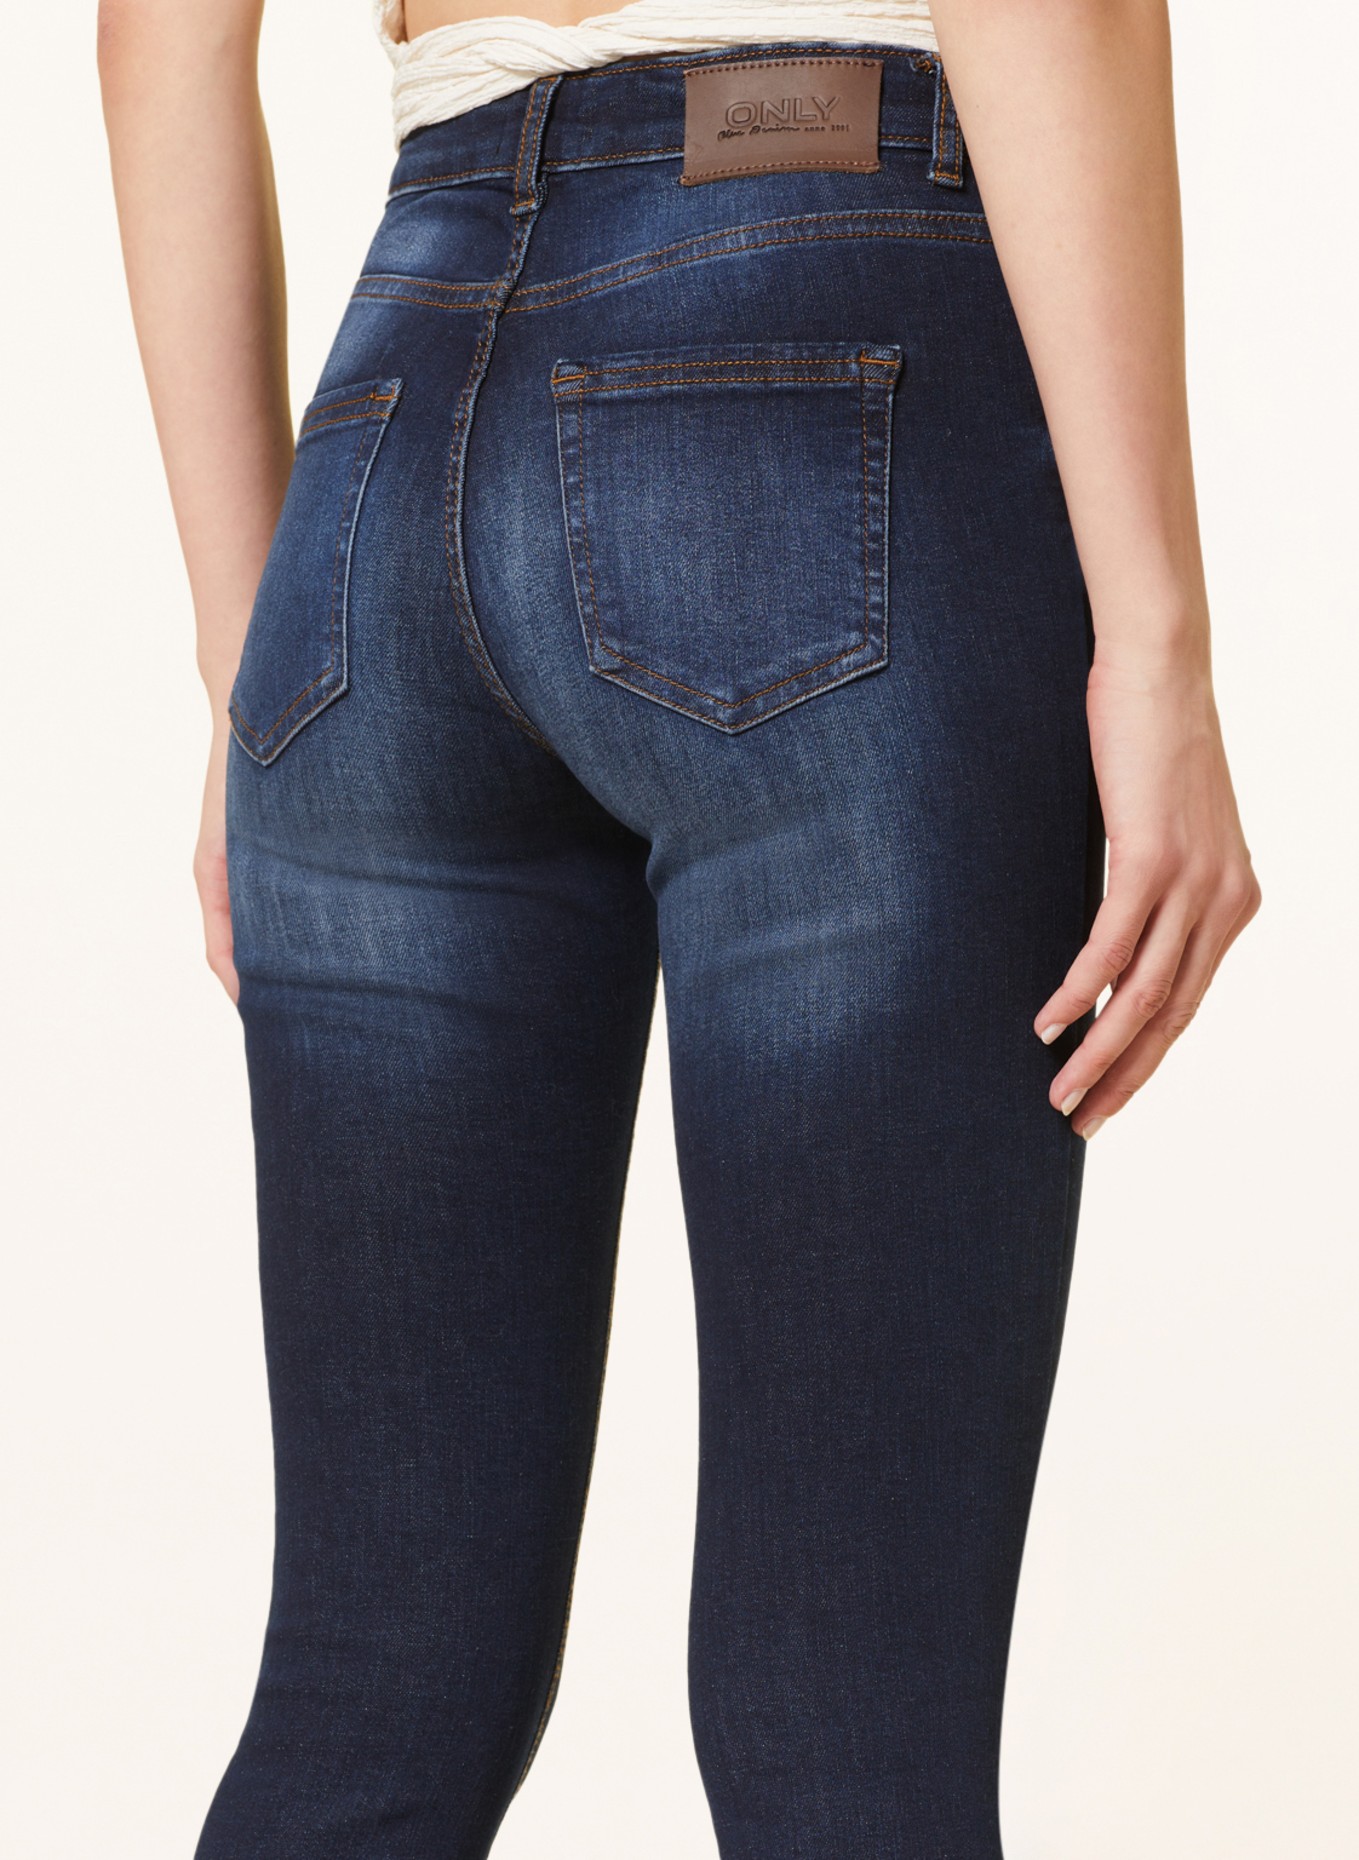 ONLY Skinny jeans, Color: Dark Blue Denim/REA837 (Image 5)